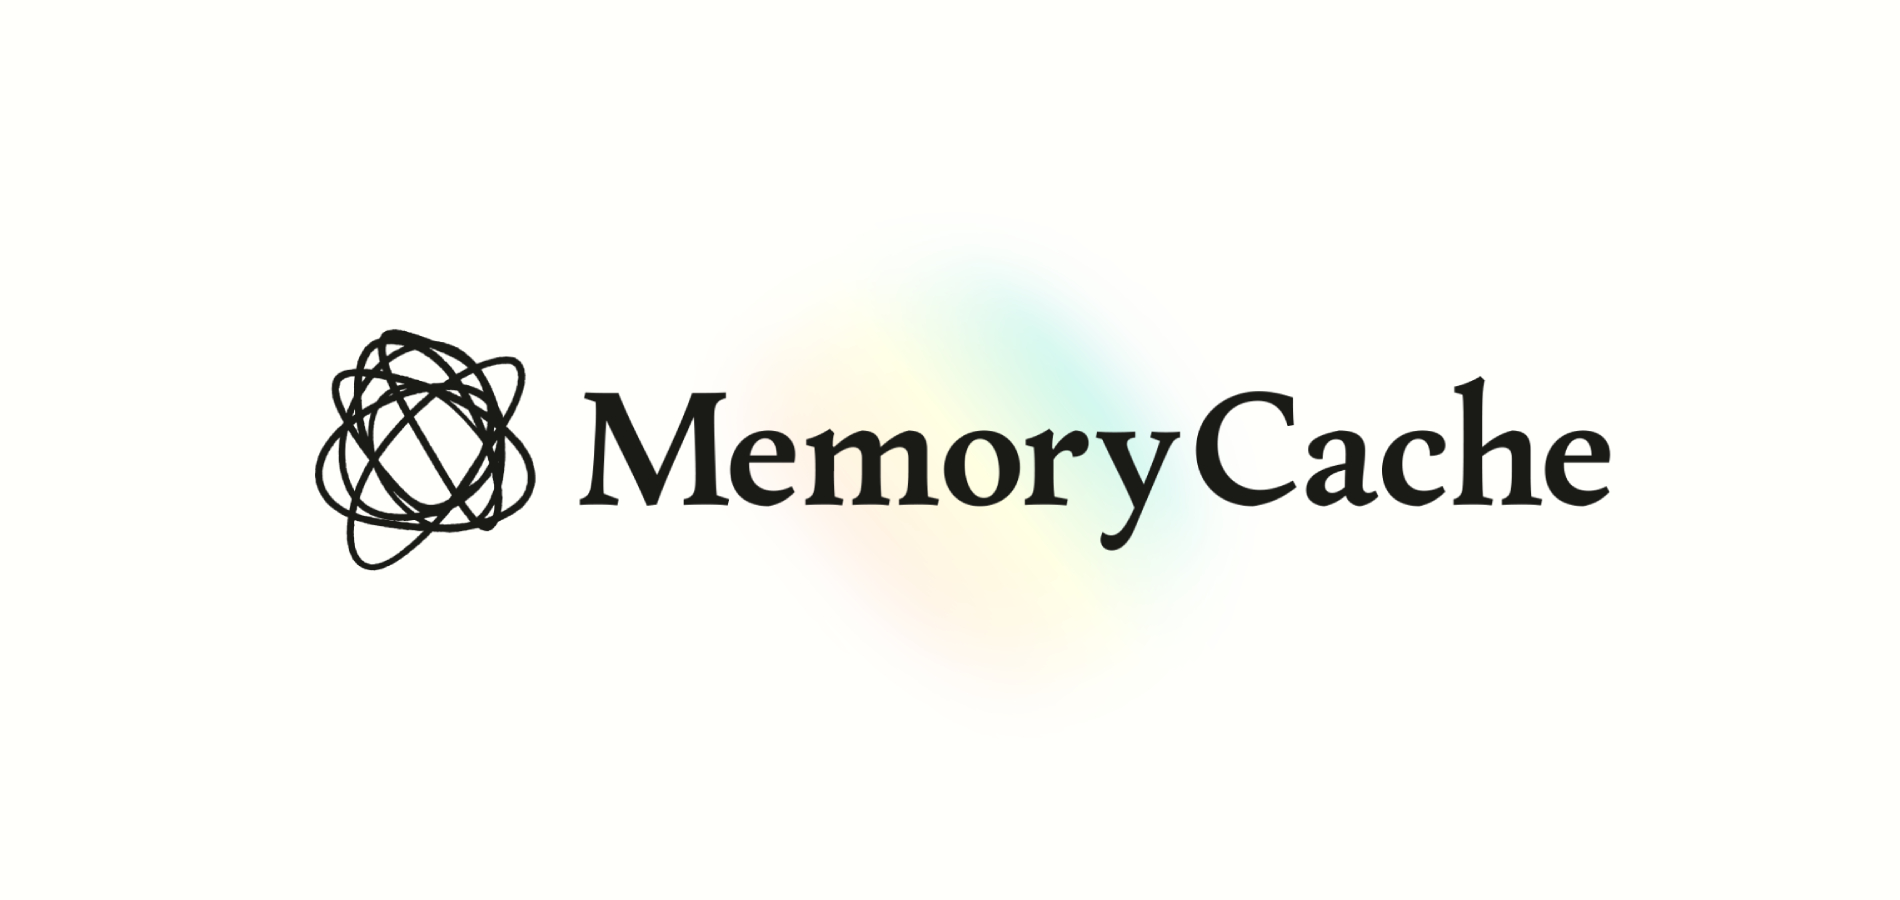 Mozilla анонсировала AI-бота MemoryCache для работы с сохранённым контентом